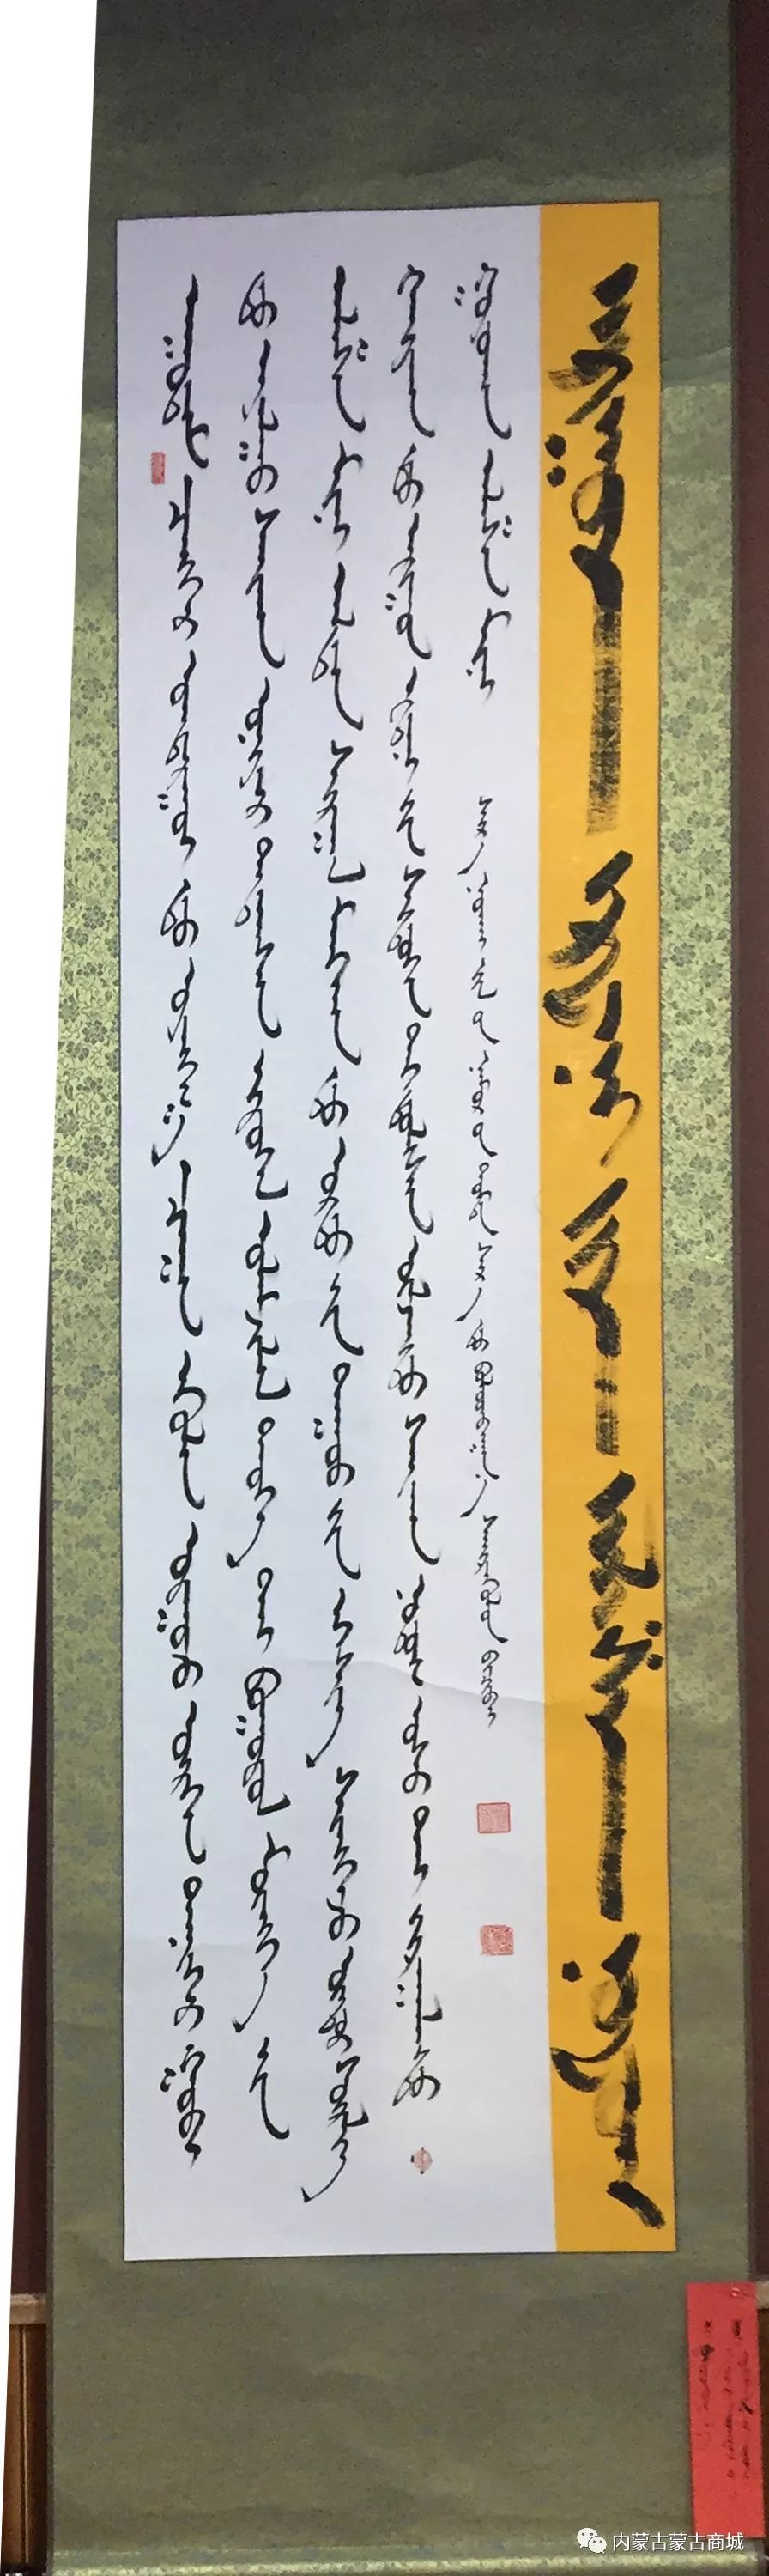 【第六期】蒙古文书法作品 第10张